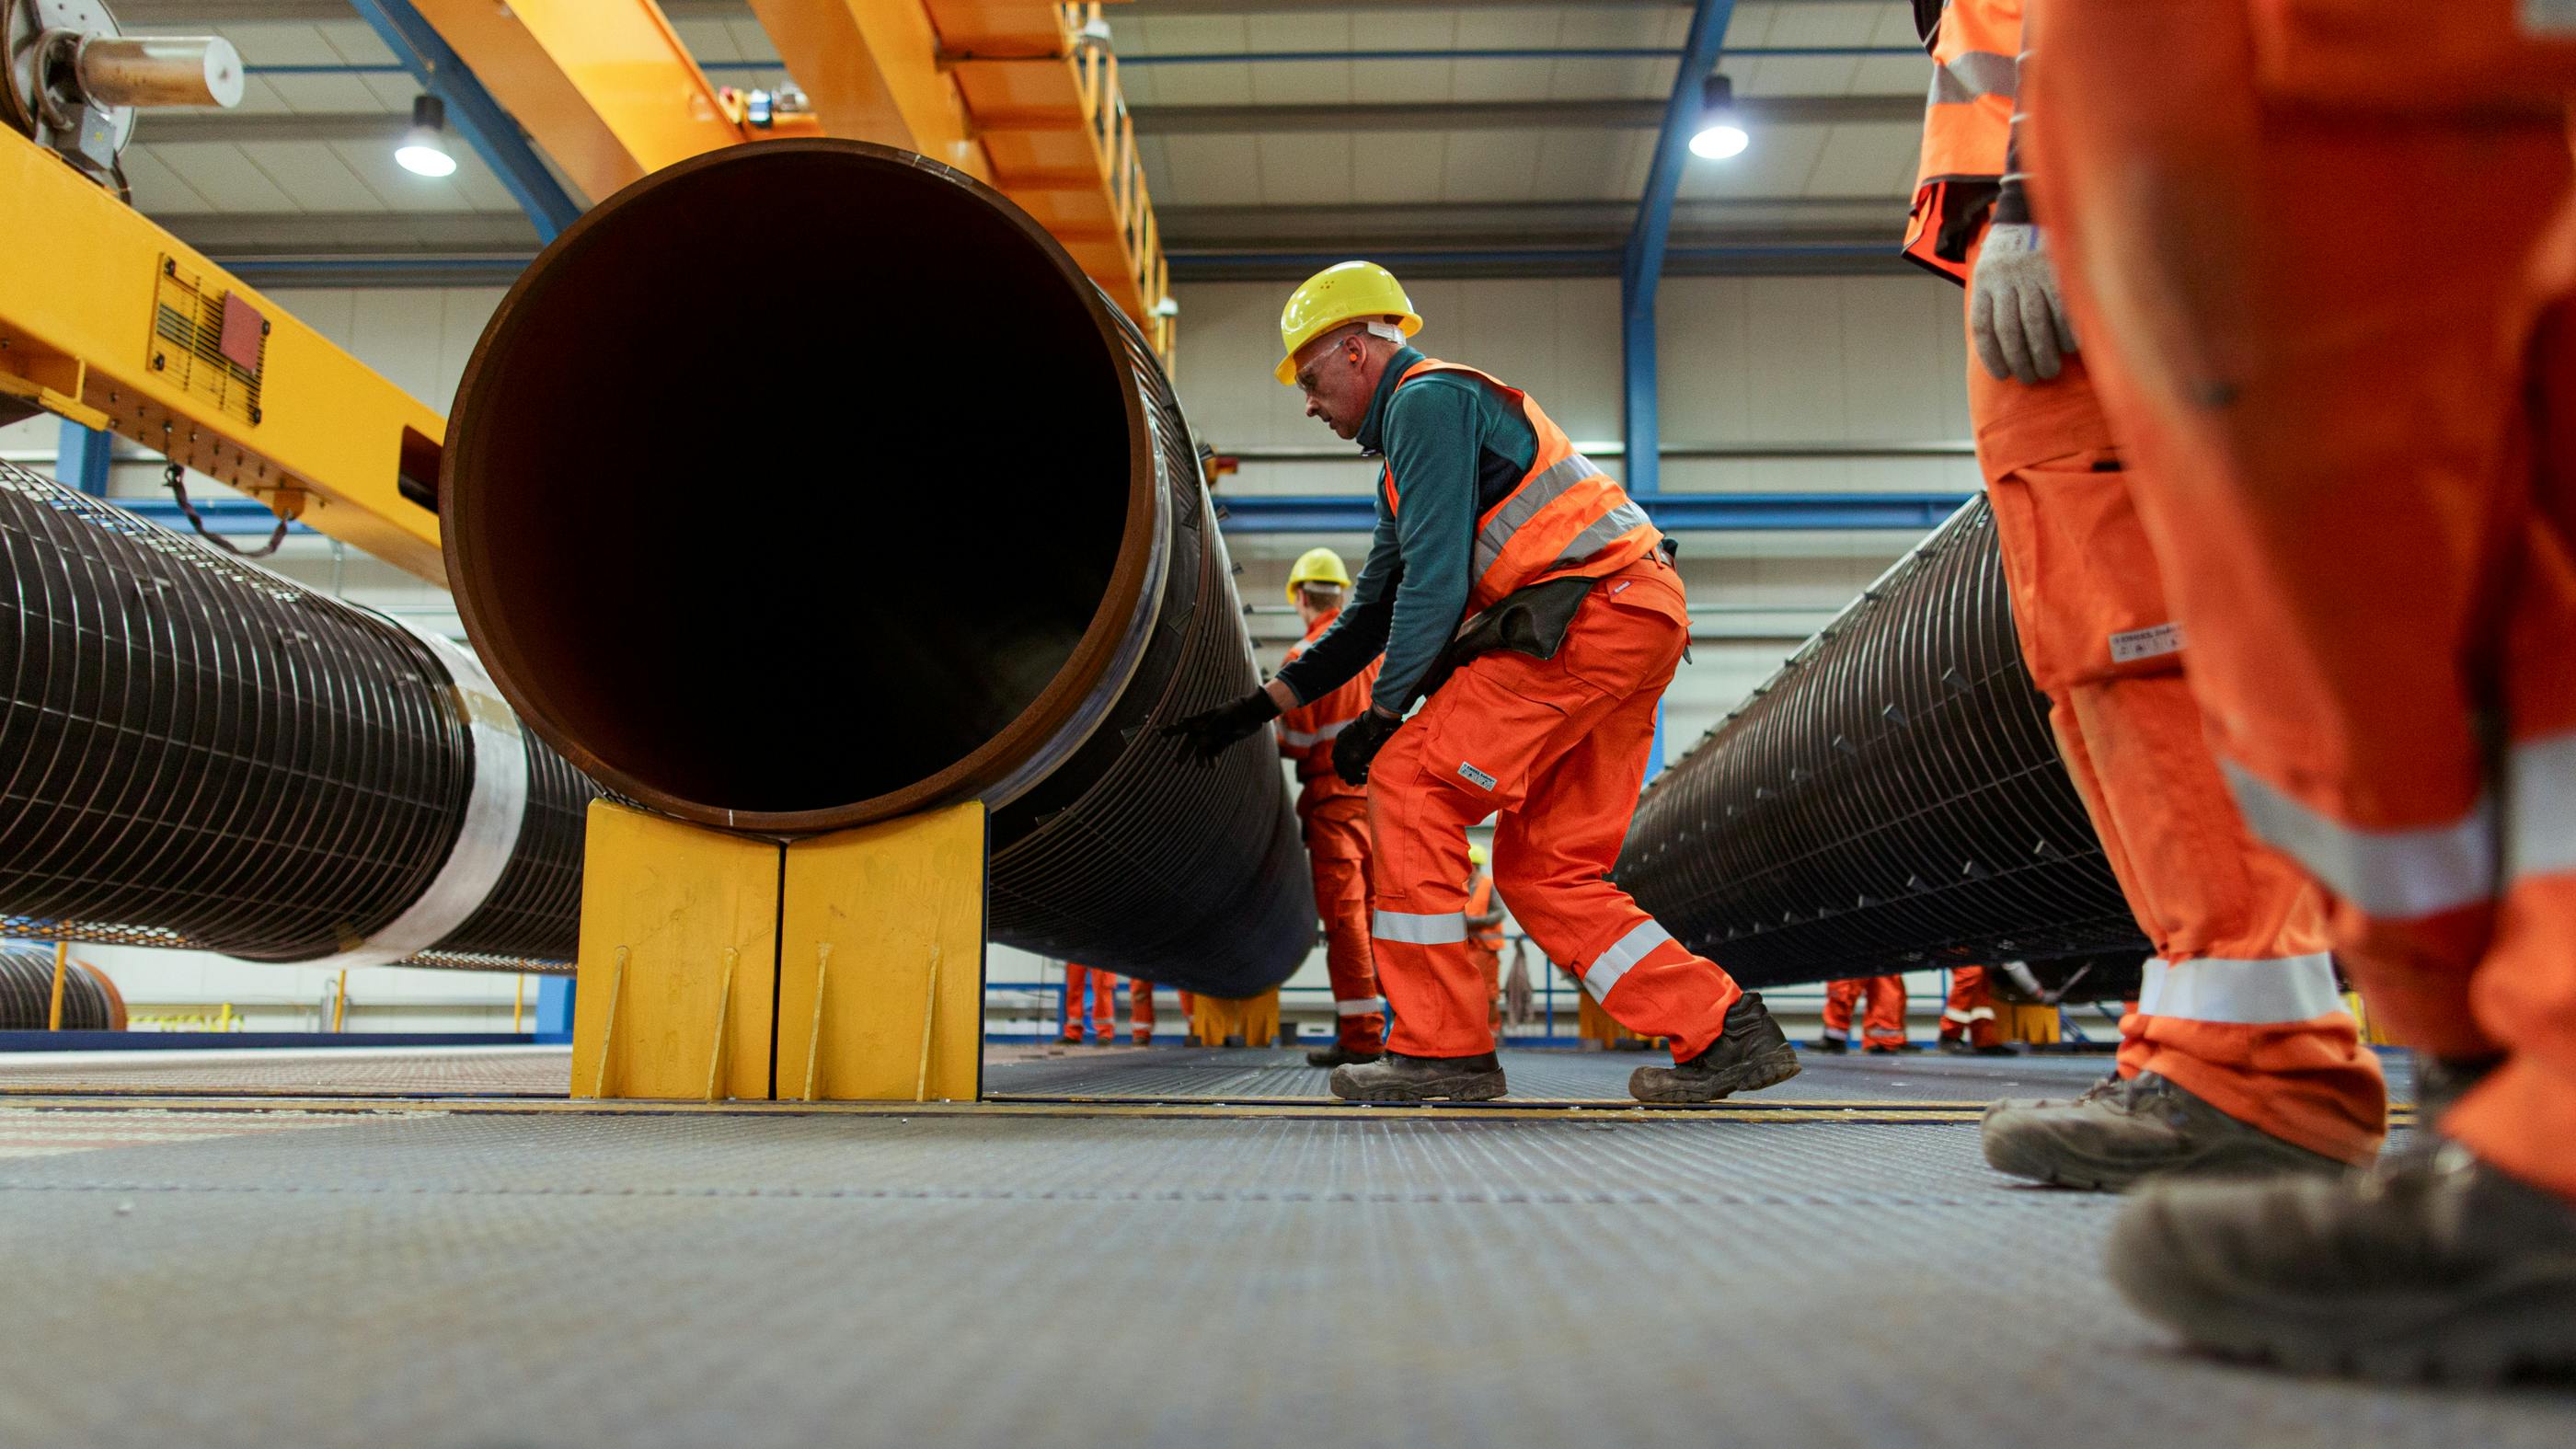 Wir sehen einen Arbeiter in oranener Arbeitskleidung, der unter ein großes Pipeline-Rohr fasst – ein paar Arbeiter schauen am rechten Rand zu.